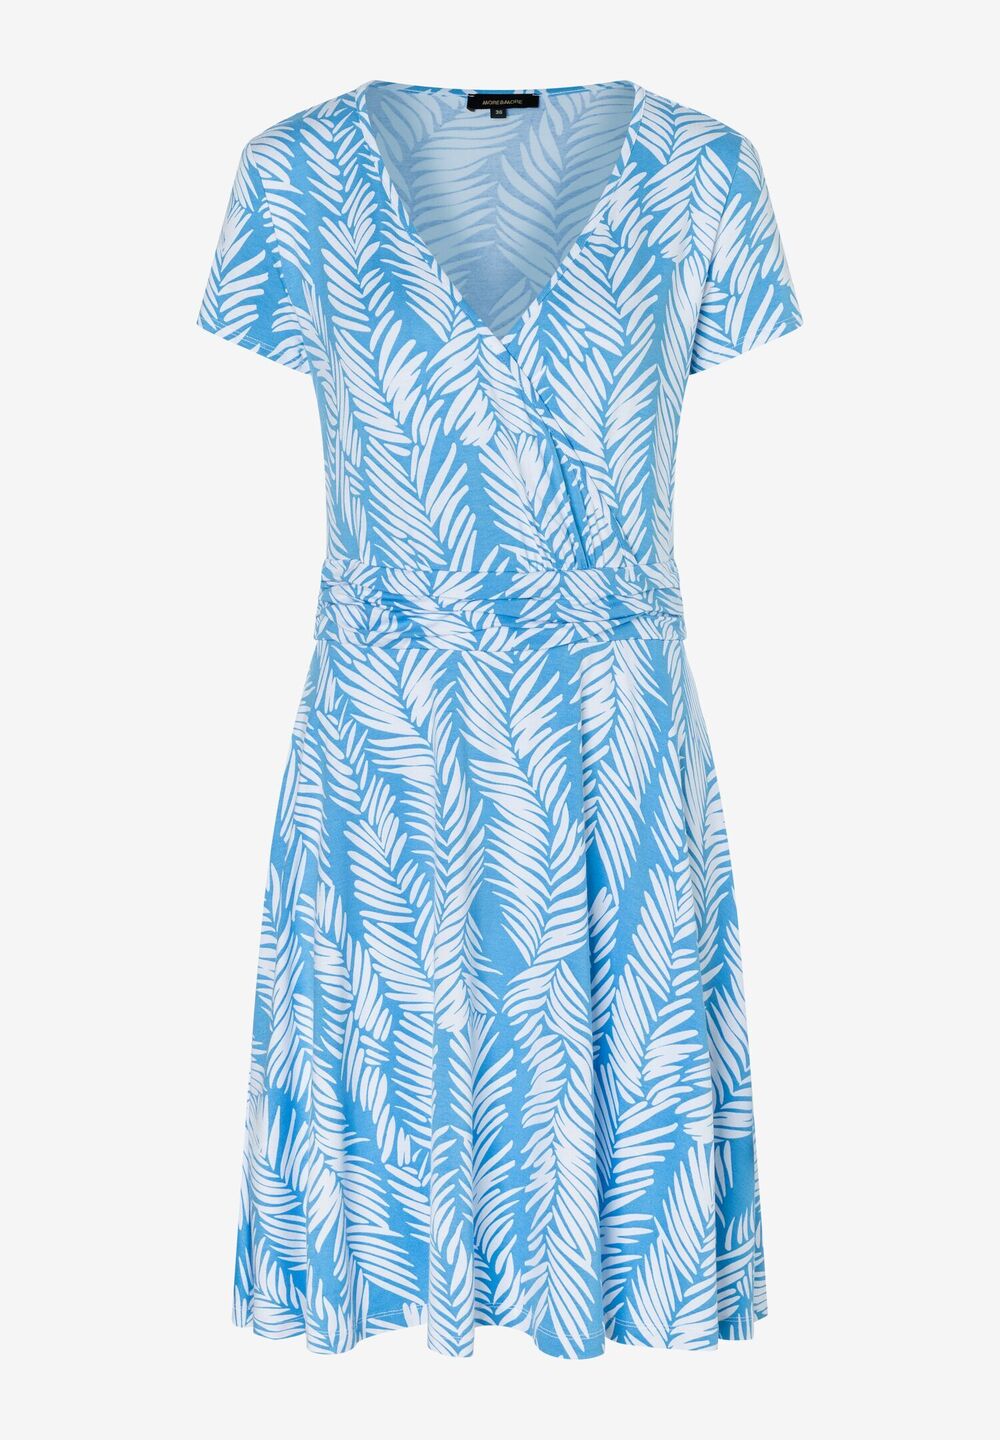 Jerseykleid, Palmblätter-Print, Sommer-Kollektion, blau Detailansicht 1